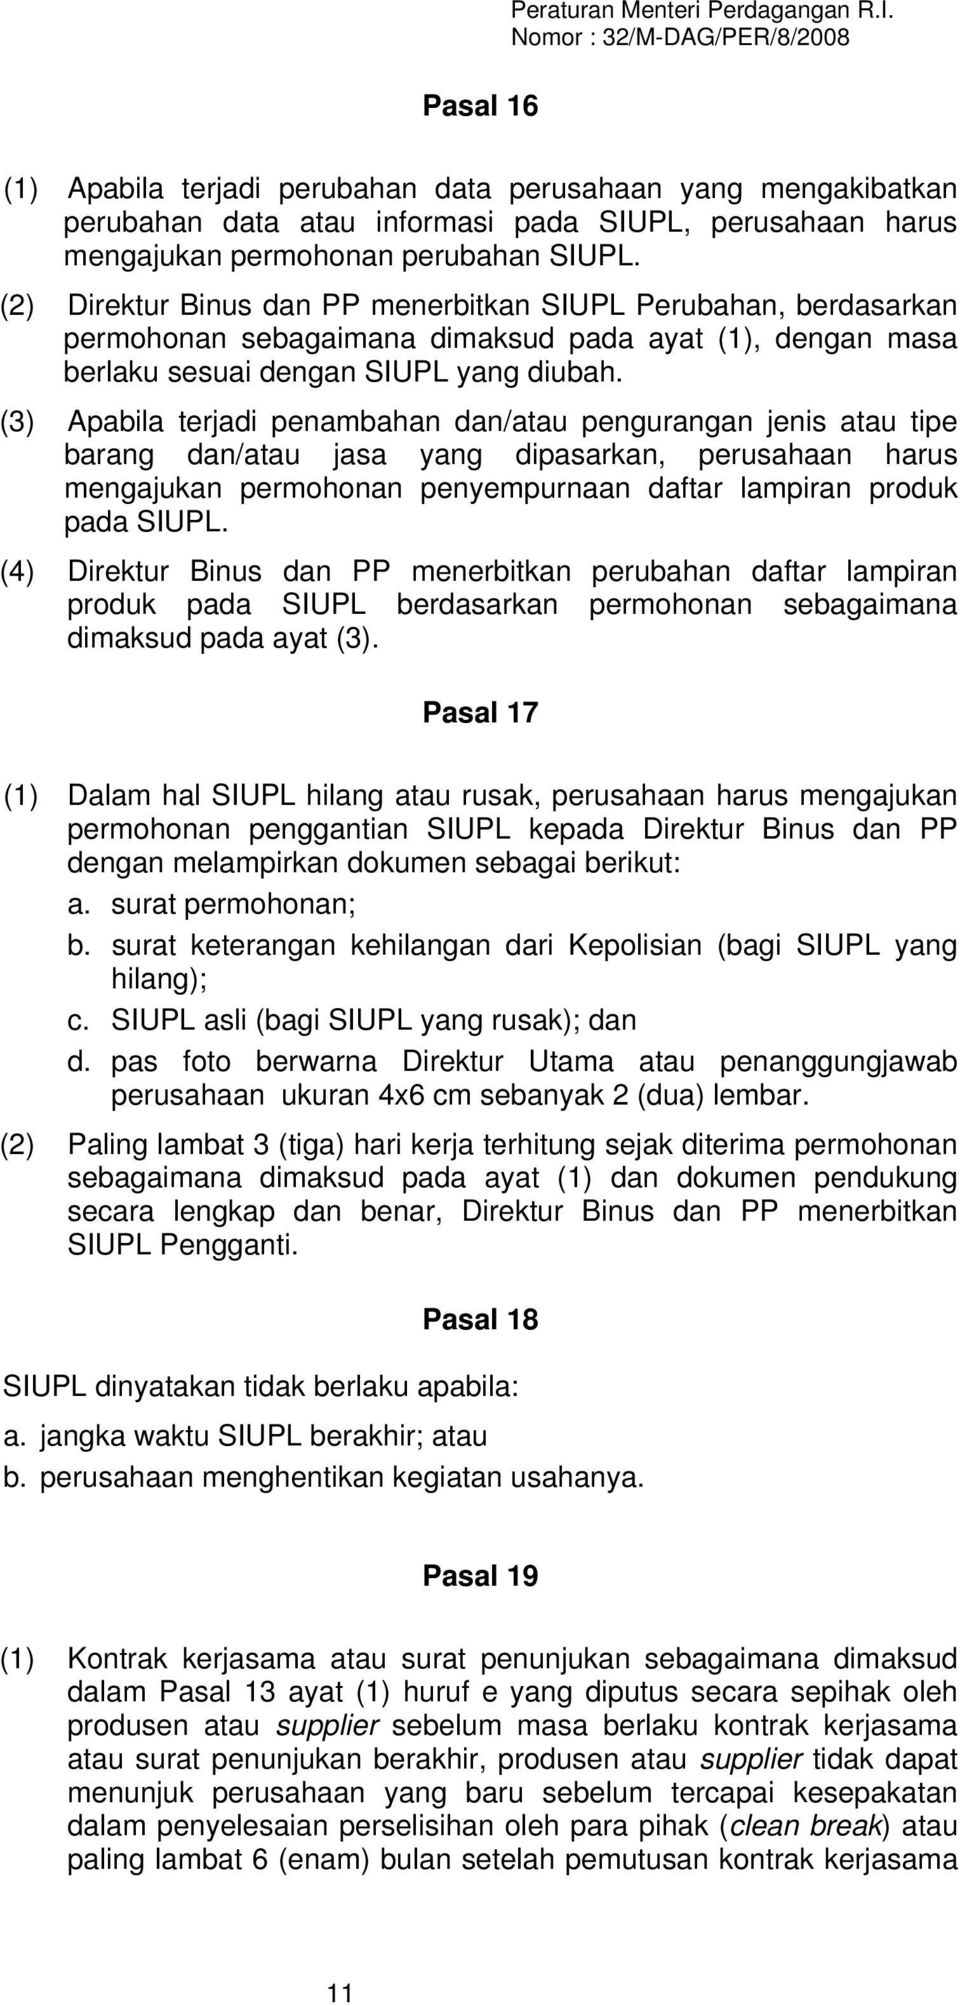 (2) Direktur Binus dan PP menerbitkan SIUPL Perubahan, berdasarkan permohonan sebagaimana dimaksud pada ayat (1), dengan masa berlaku sesuai dengan SIUPL yang diubah.